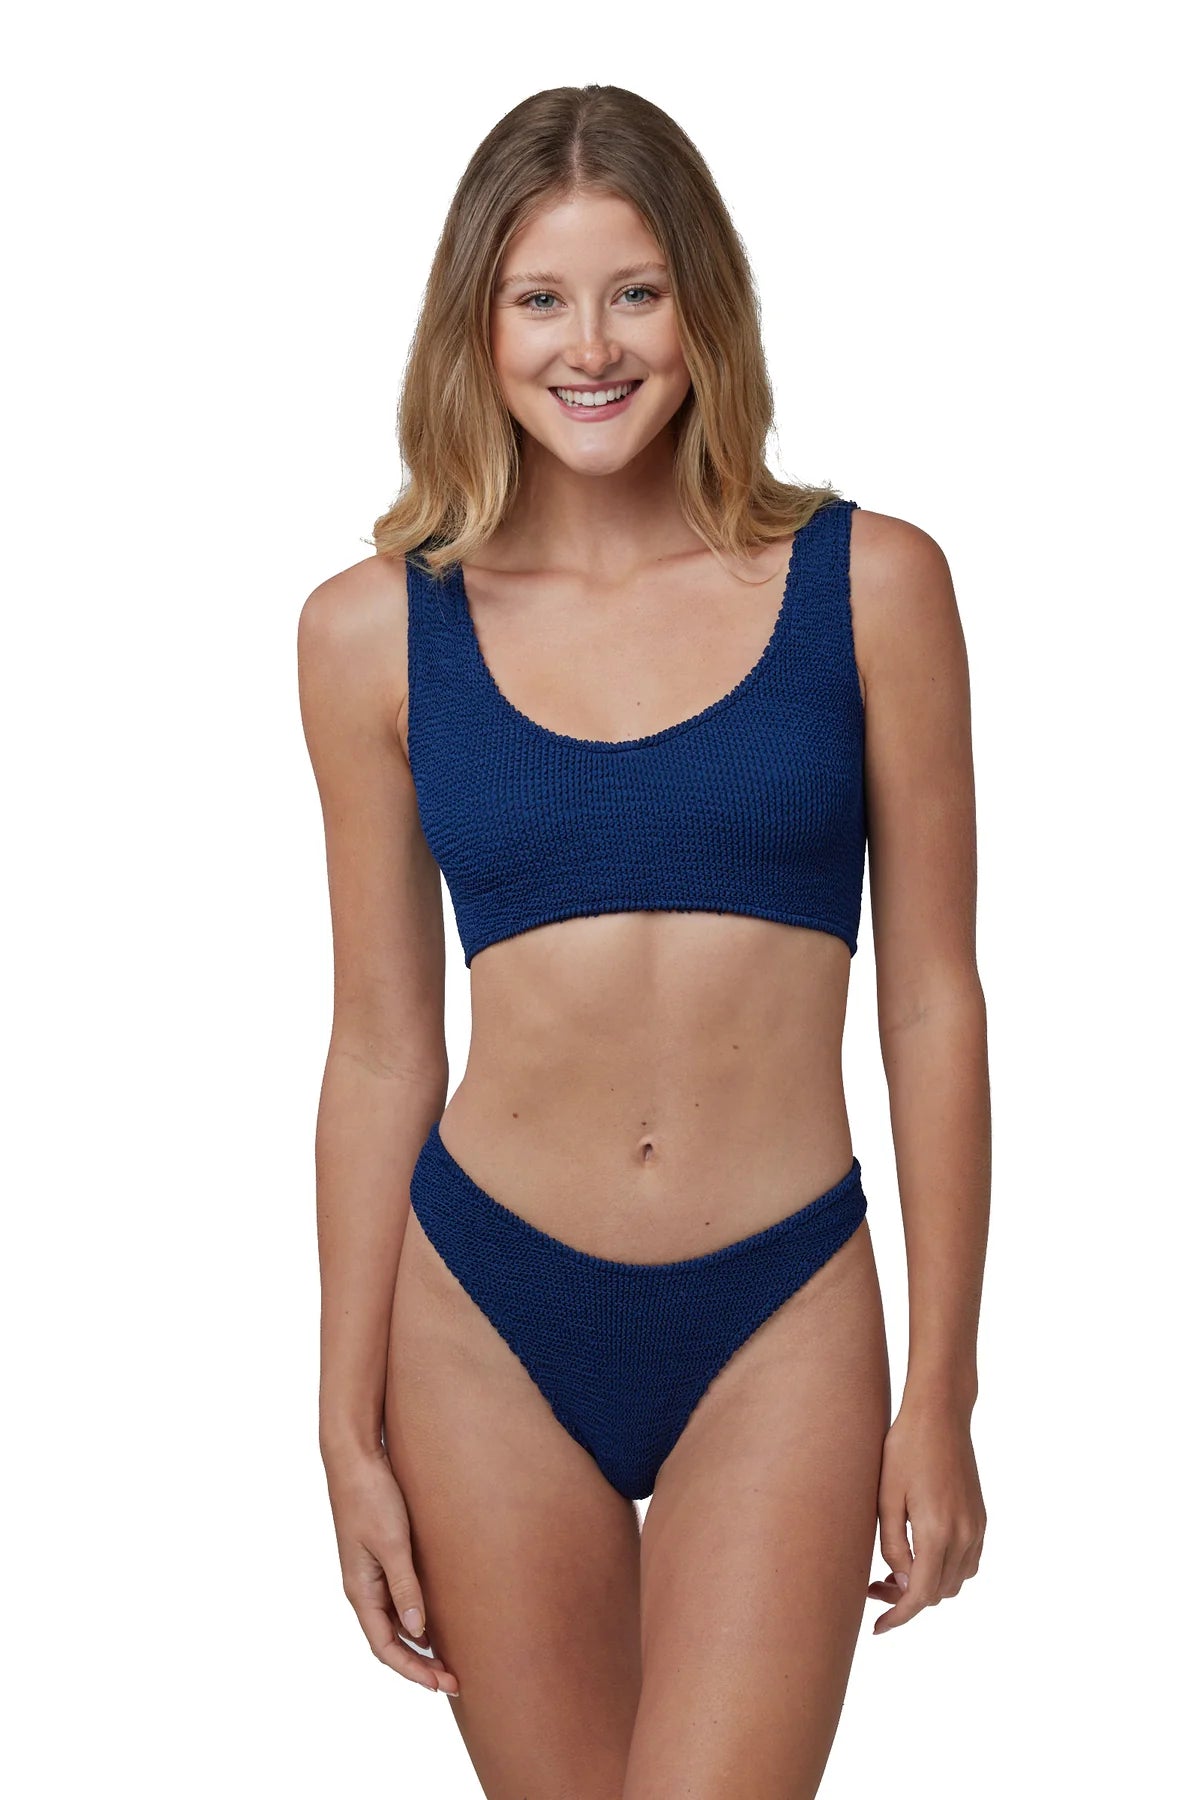 Cancun Classic Seamless One Size Bikini Top